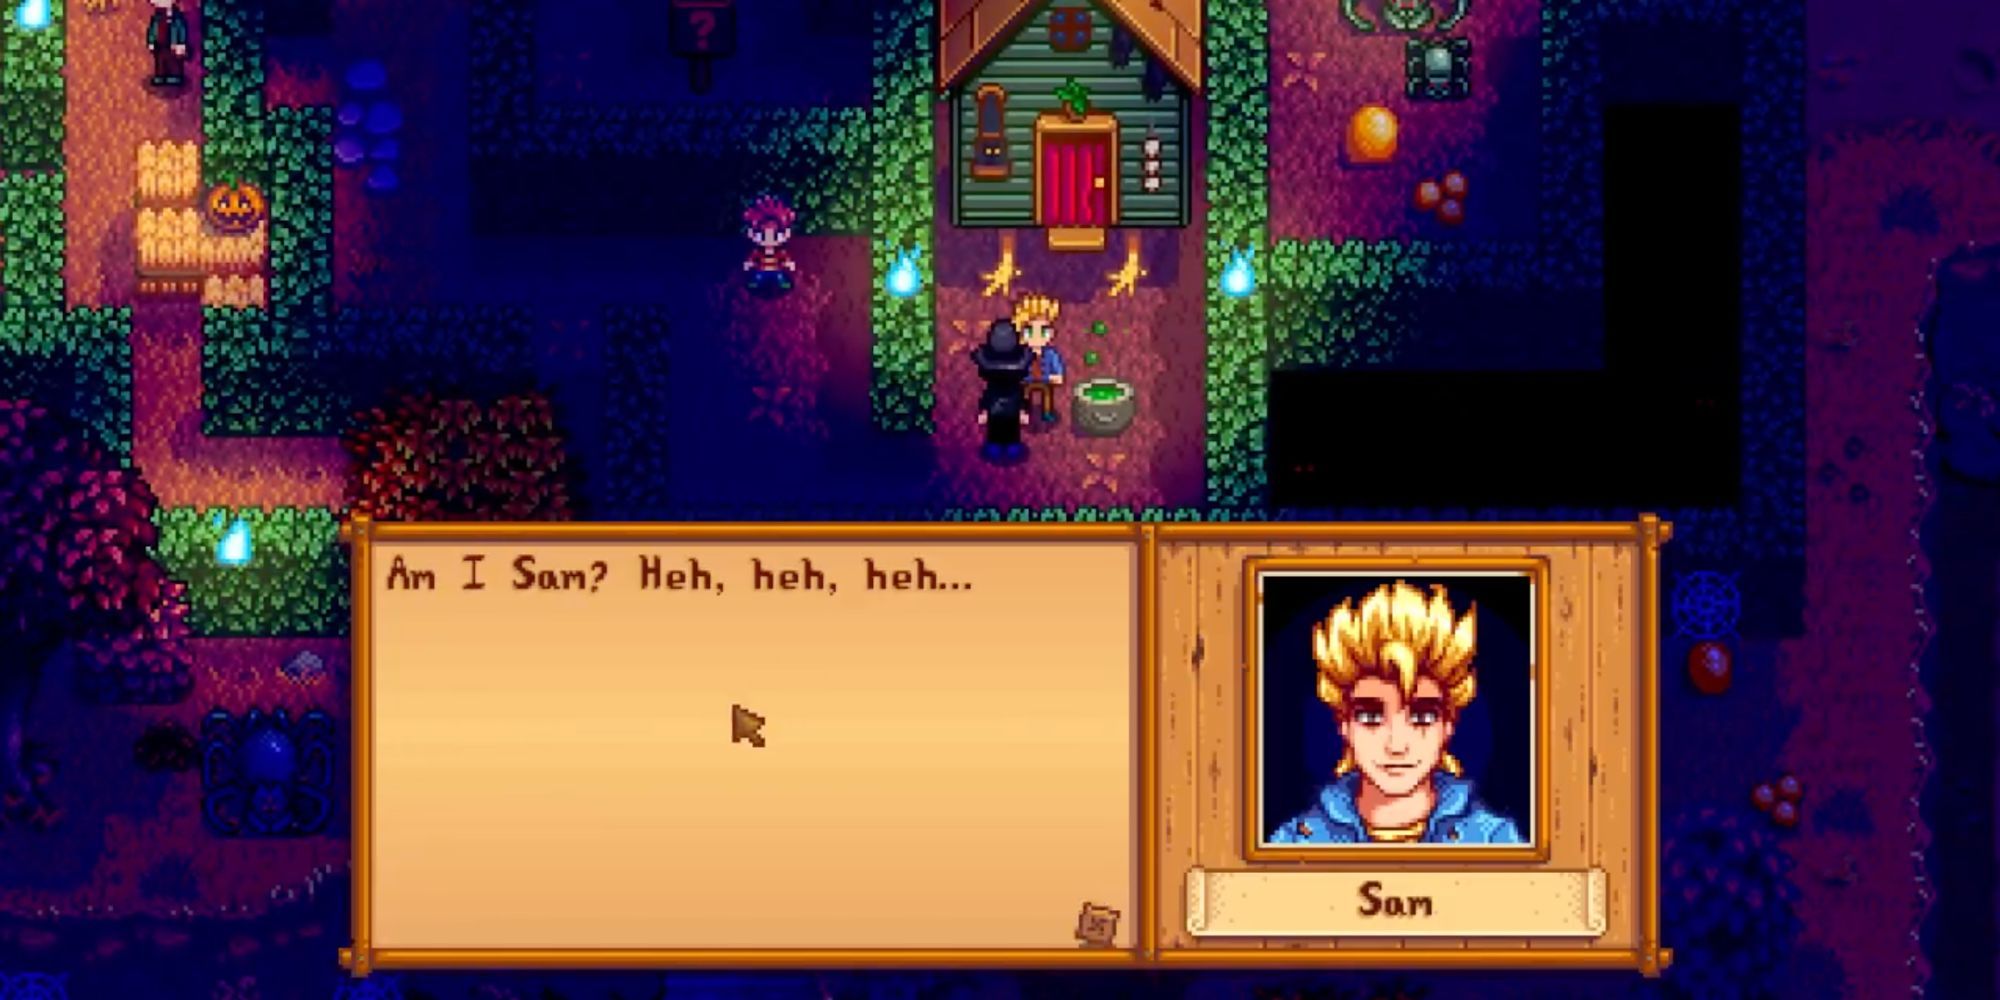 Leitura de diálogo de Sam "Eu sou Sam? Heh, heh, heh..." no festival Spirit's Eve no Ano 2 de Stardew Valley